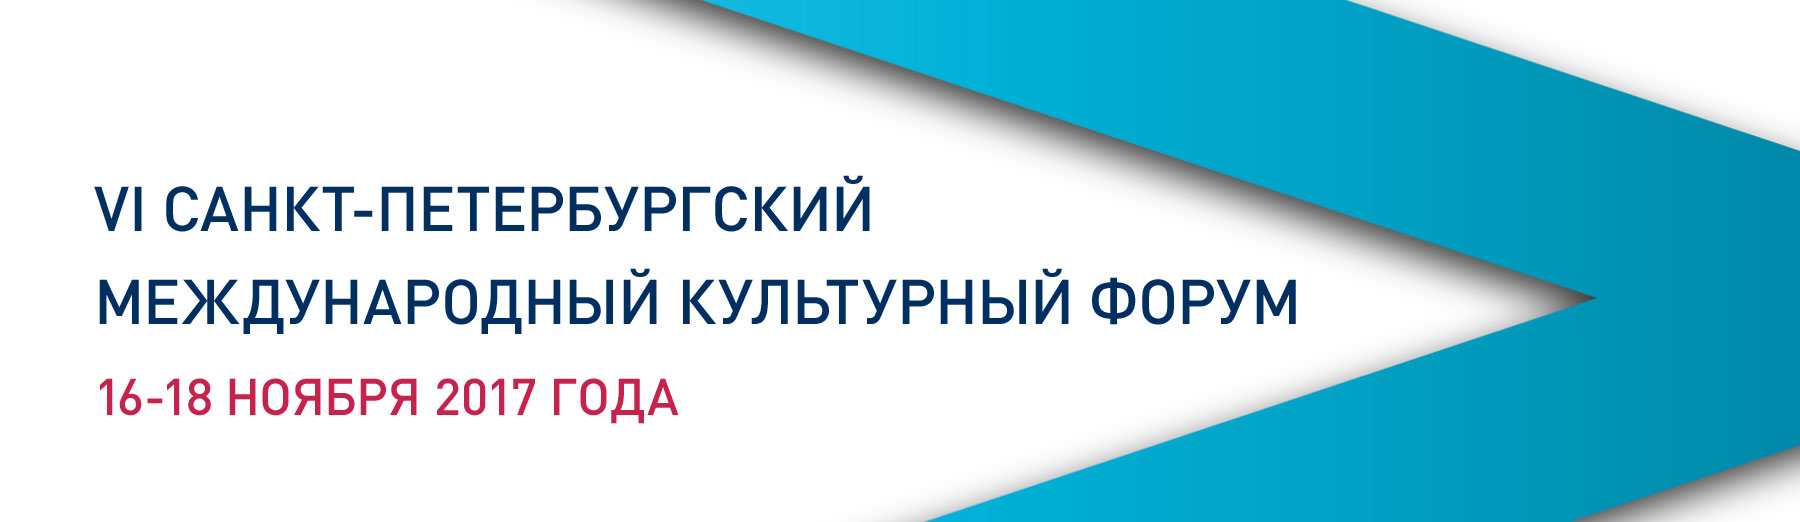 с 16 по 18 ноября пройдёт VI Санкт-Петербургский международный культурный форум